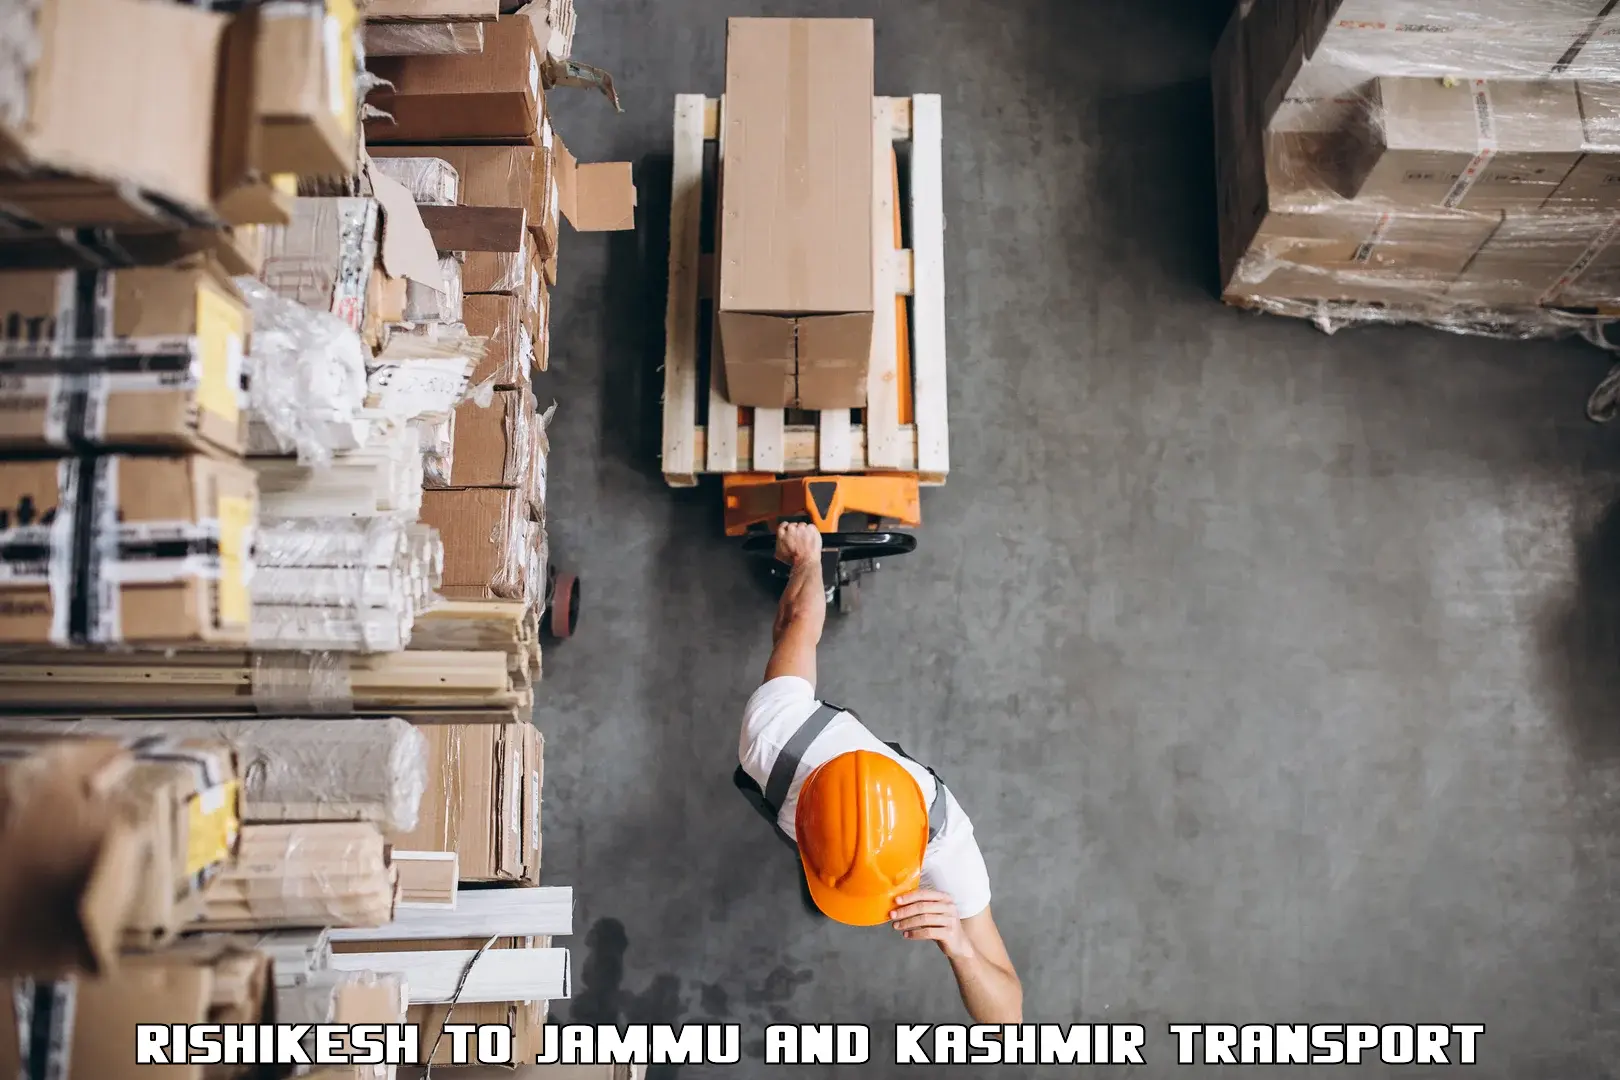 Shipping partner Rishikesh to Katra